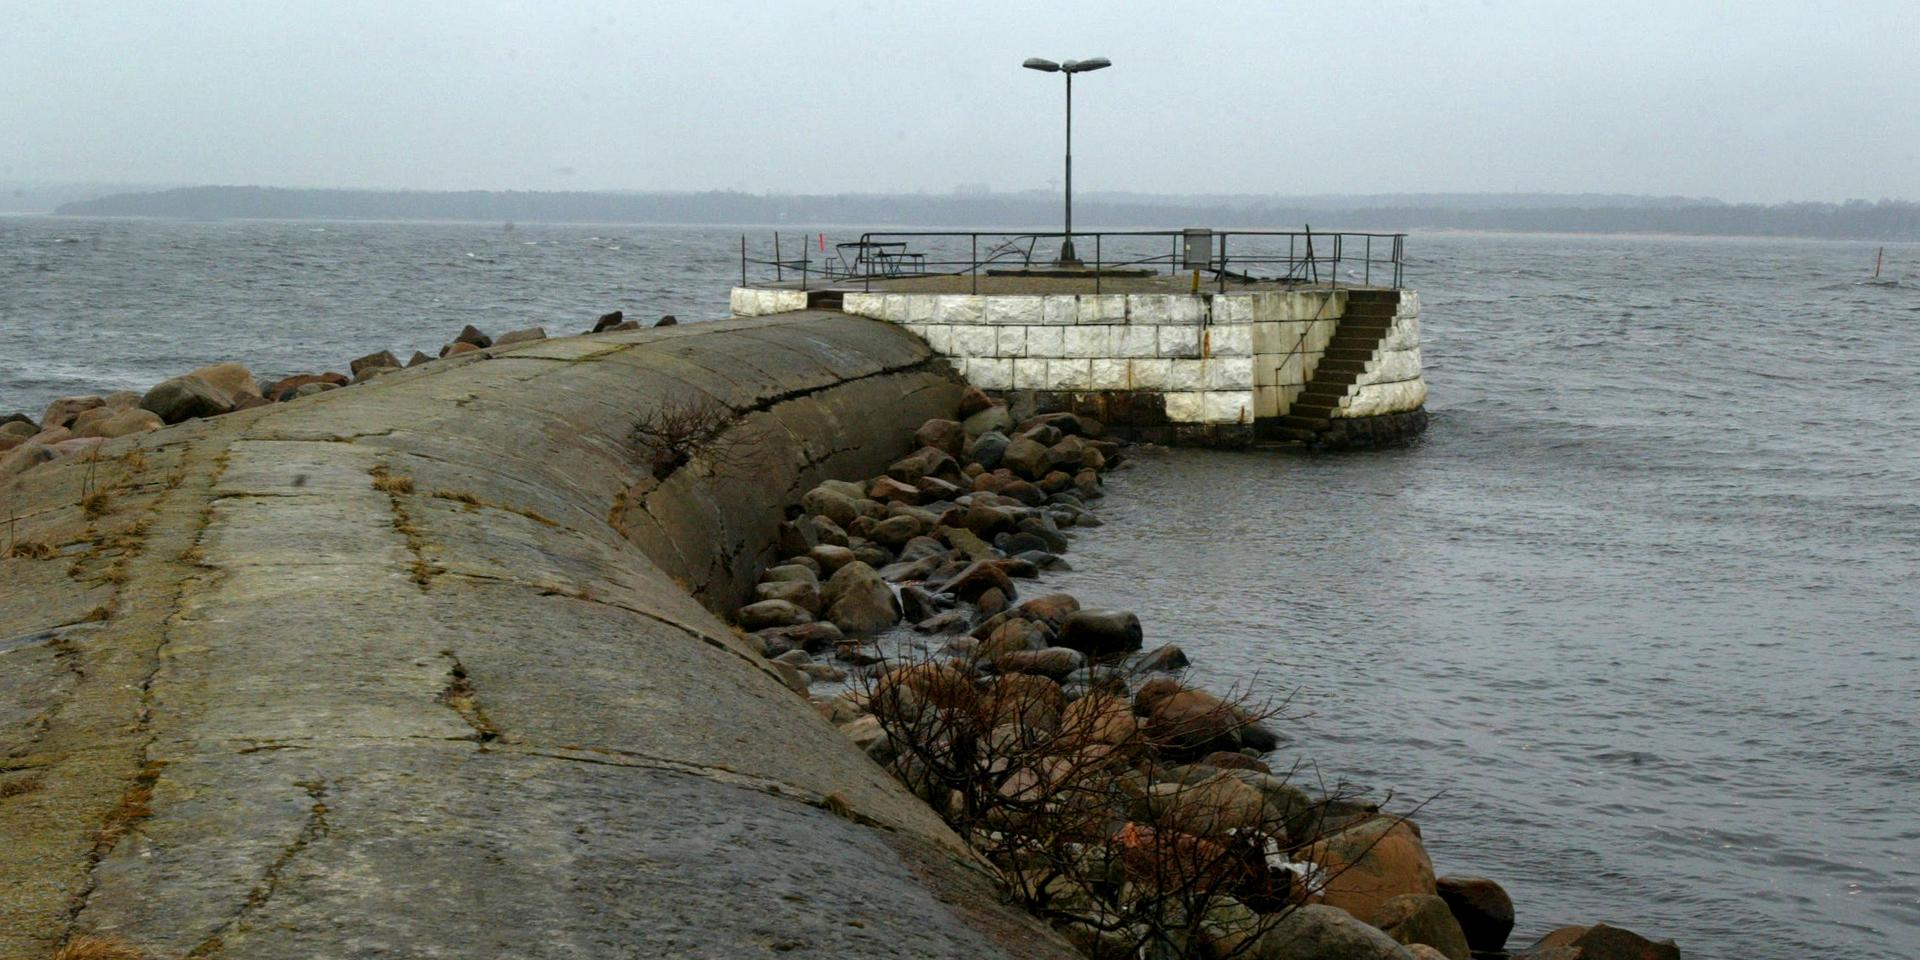 Populär fiskeplats i Halmstads hamn före förbudet.